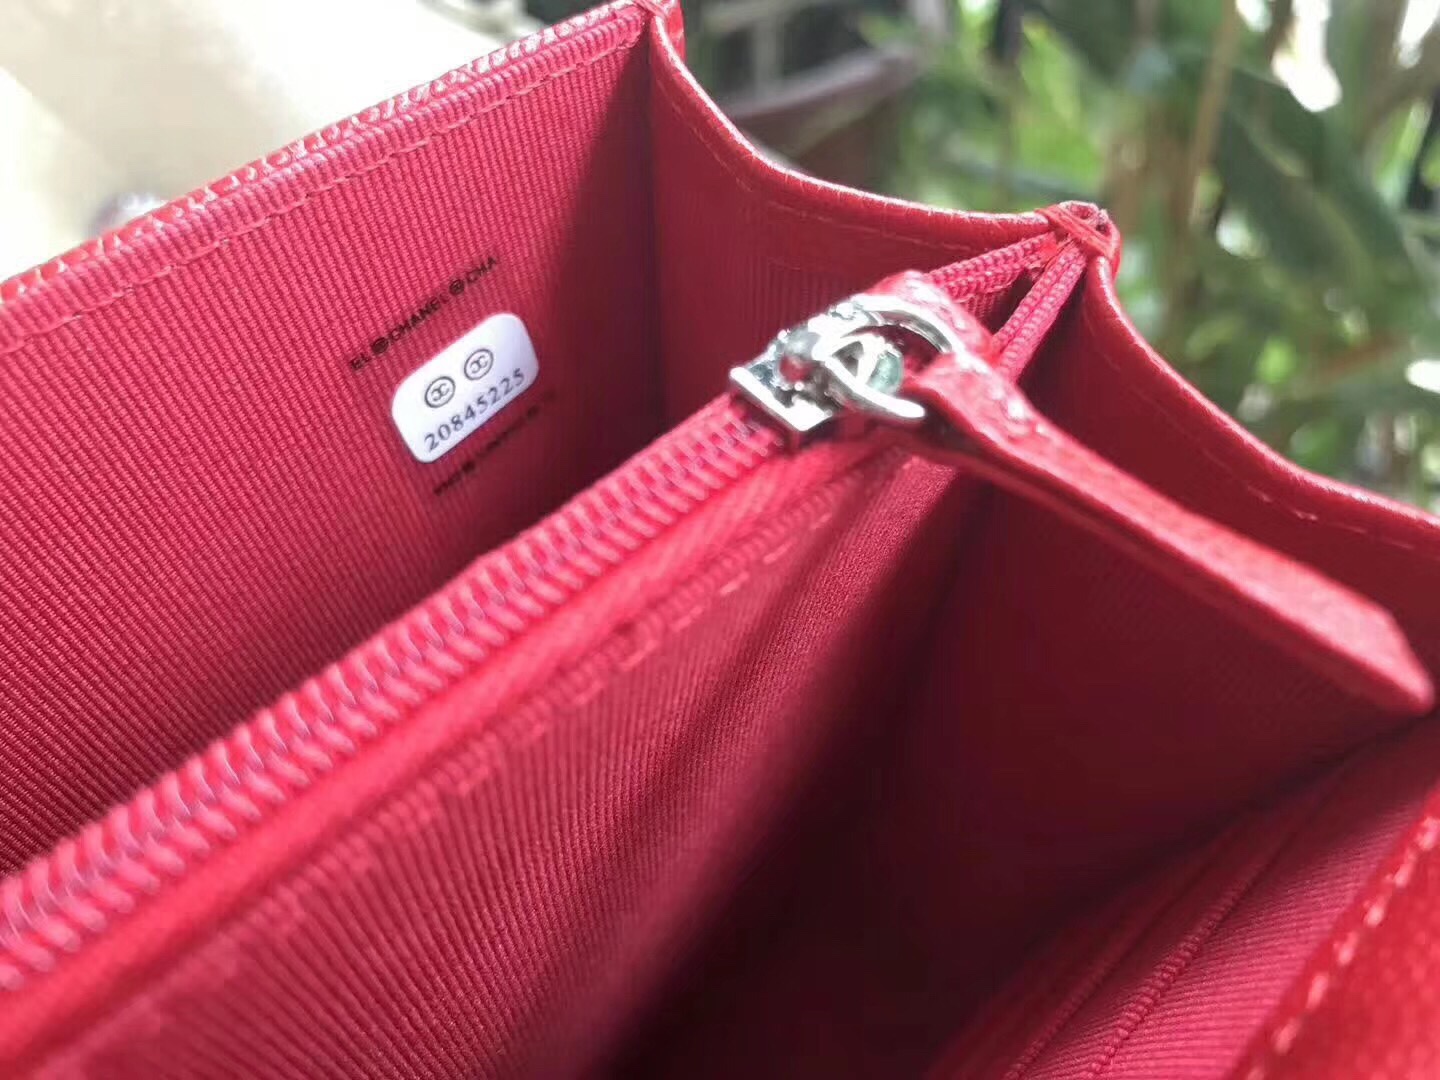 Túi xách Chanel Mini siêu cấp - TXCN106